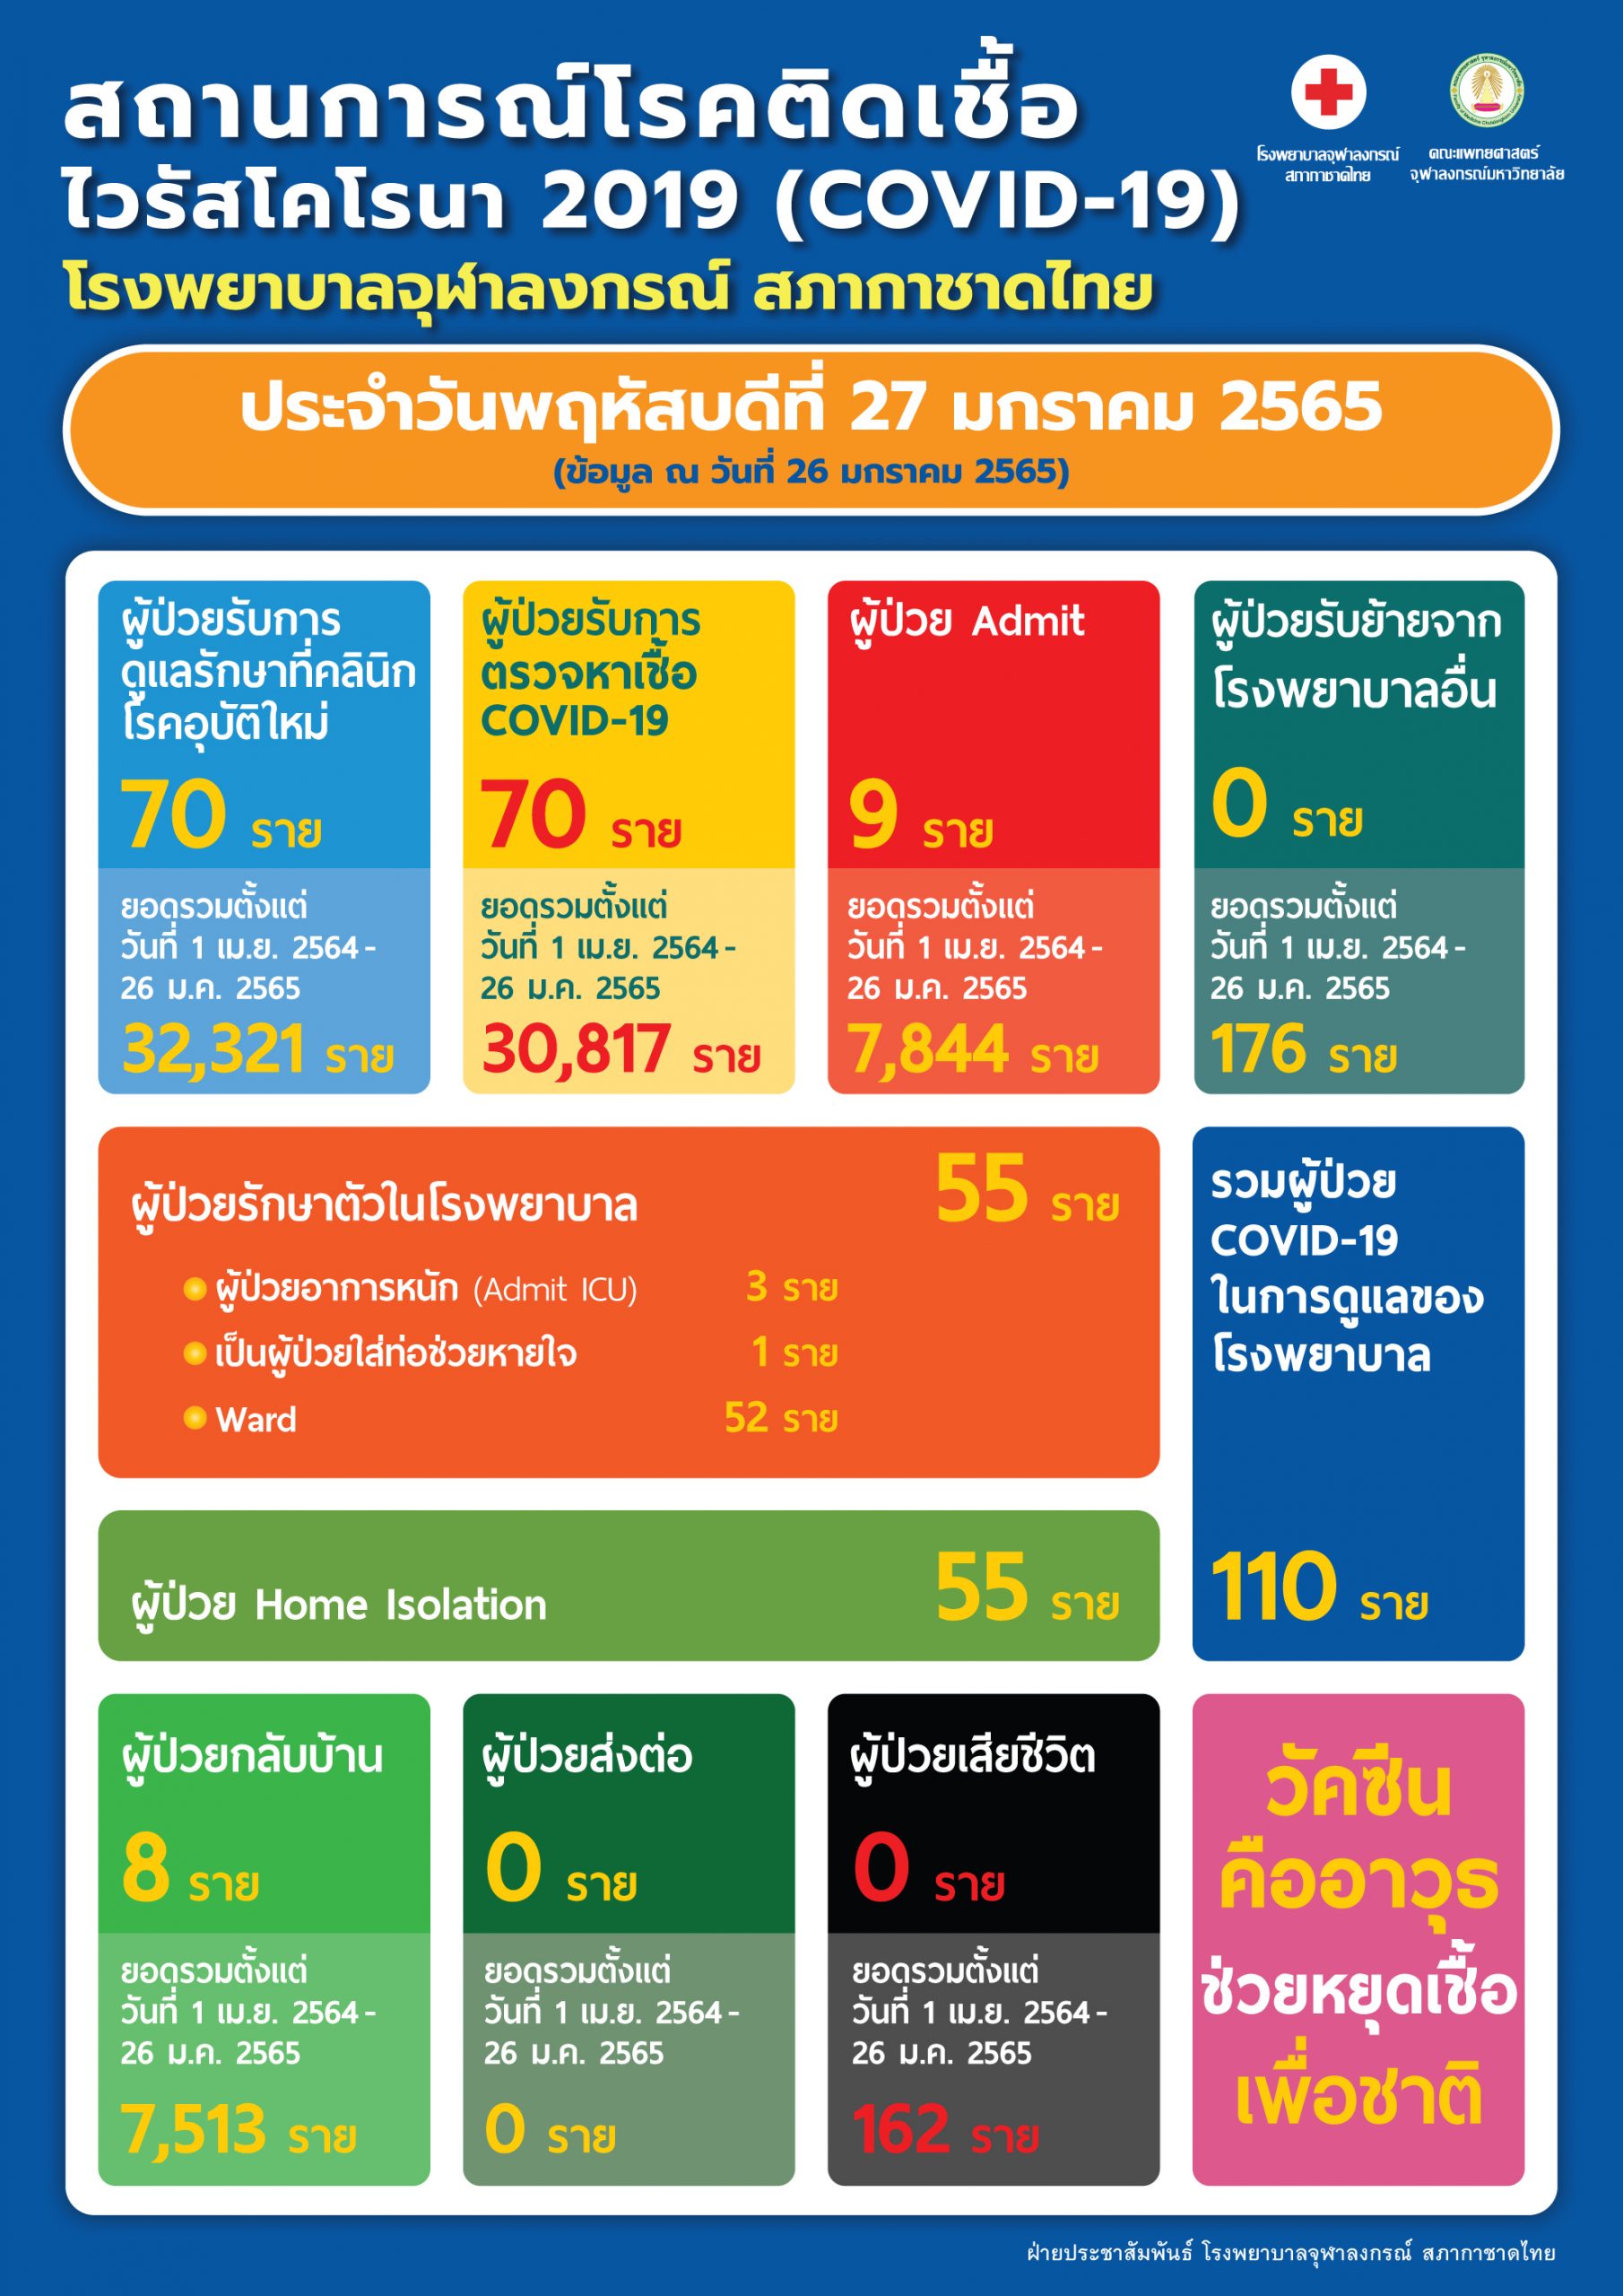 สถานการณ์โรคติดเชื้อไวรัสโคโรนา 2019 (COVID-19) โรงพยาบาลจุฬาลงกรณ์ สภากาชาดไทย ประจำวันพฤหัสบดีที่ 27 มกราคม 2565